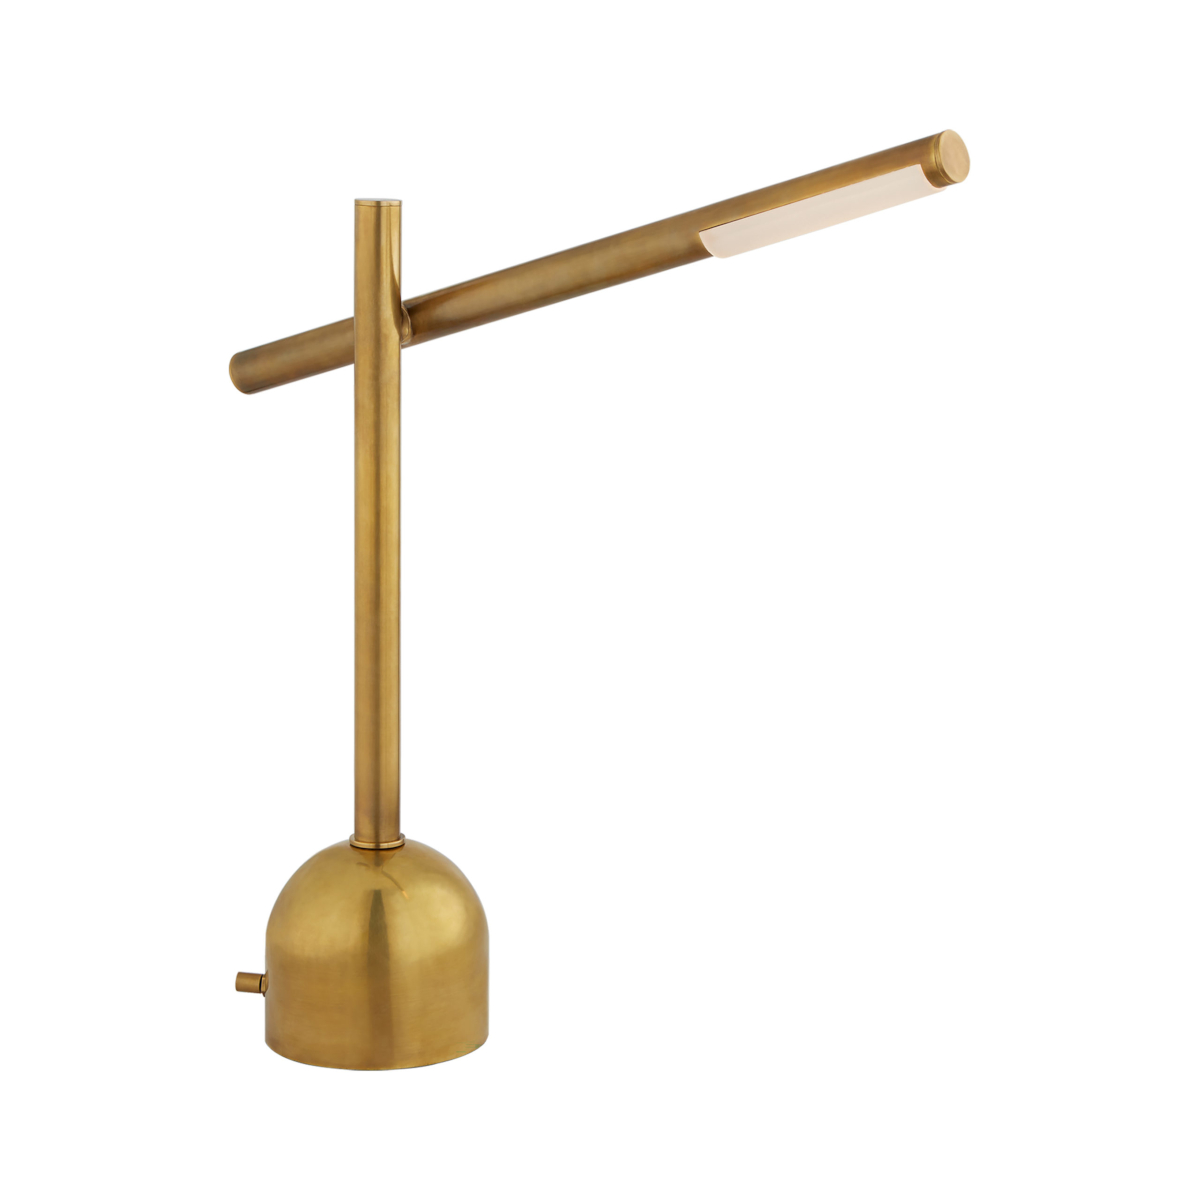 Boom_Arm Table_Lamp_Brass_Crystal_designer_lighting_adelaide.jpg